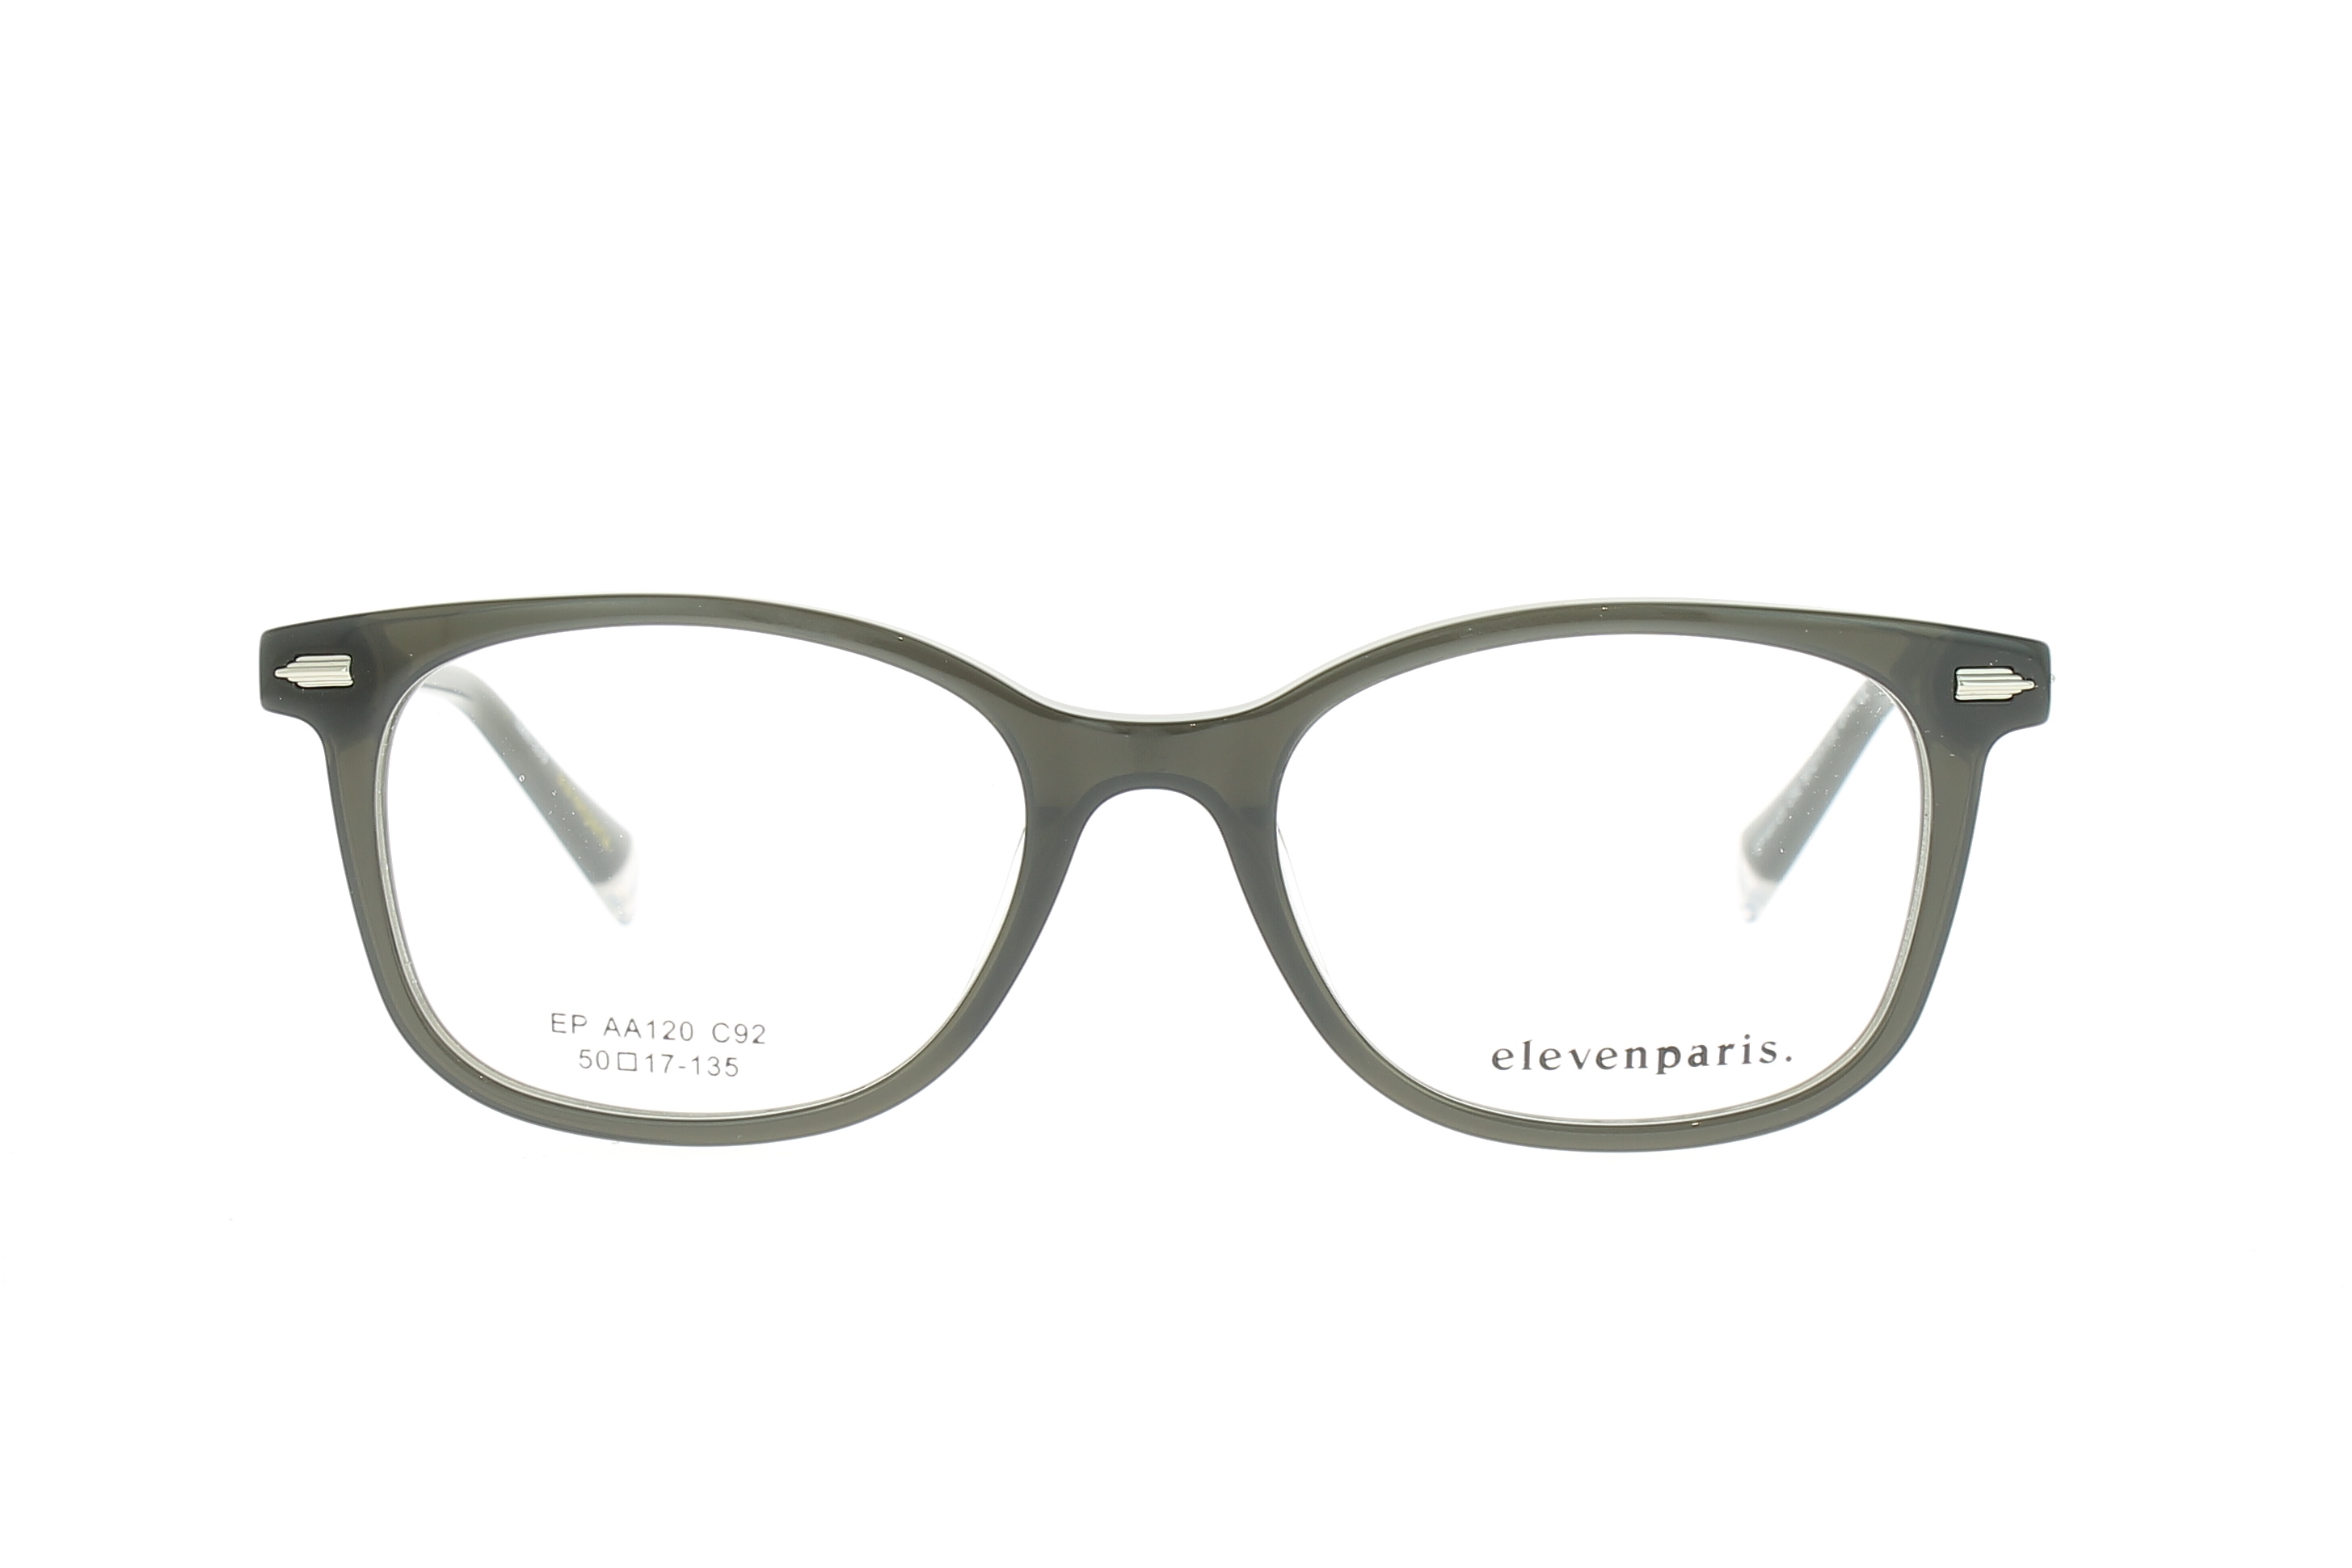 Paire de lunettes de vue Eleven-paris Epaa120 couleur noir - Doyle